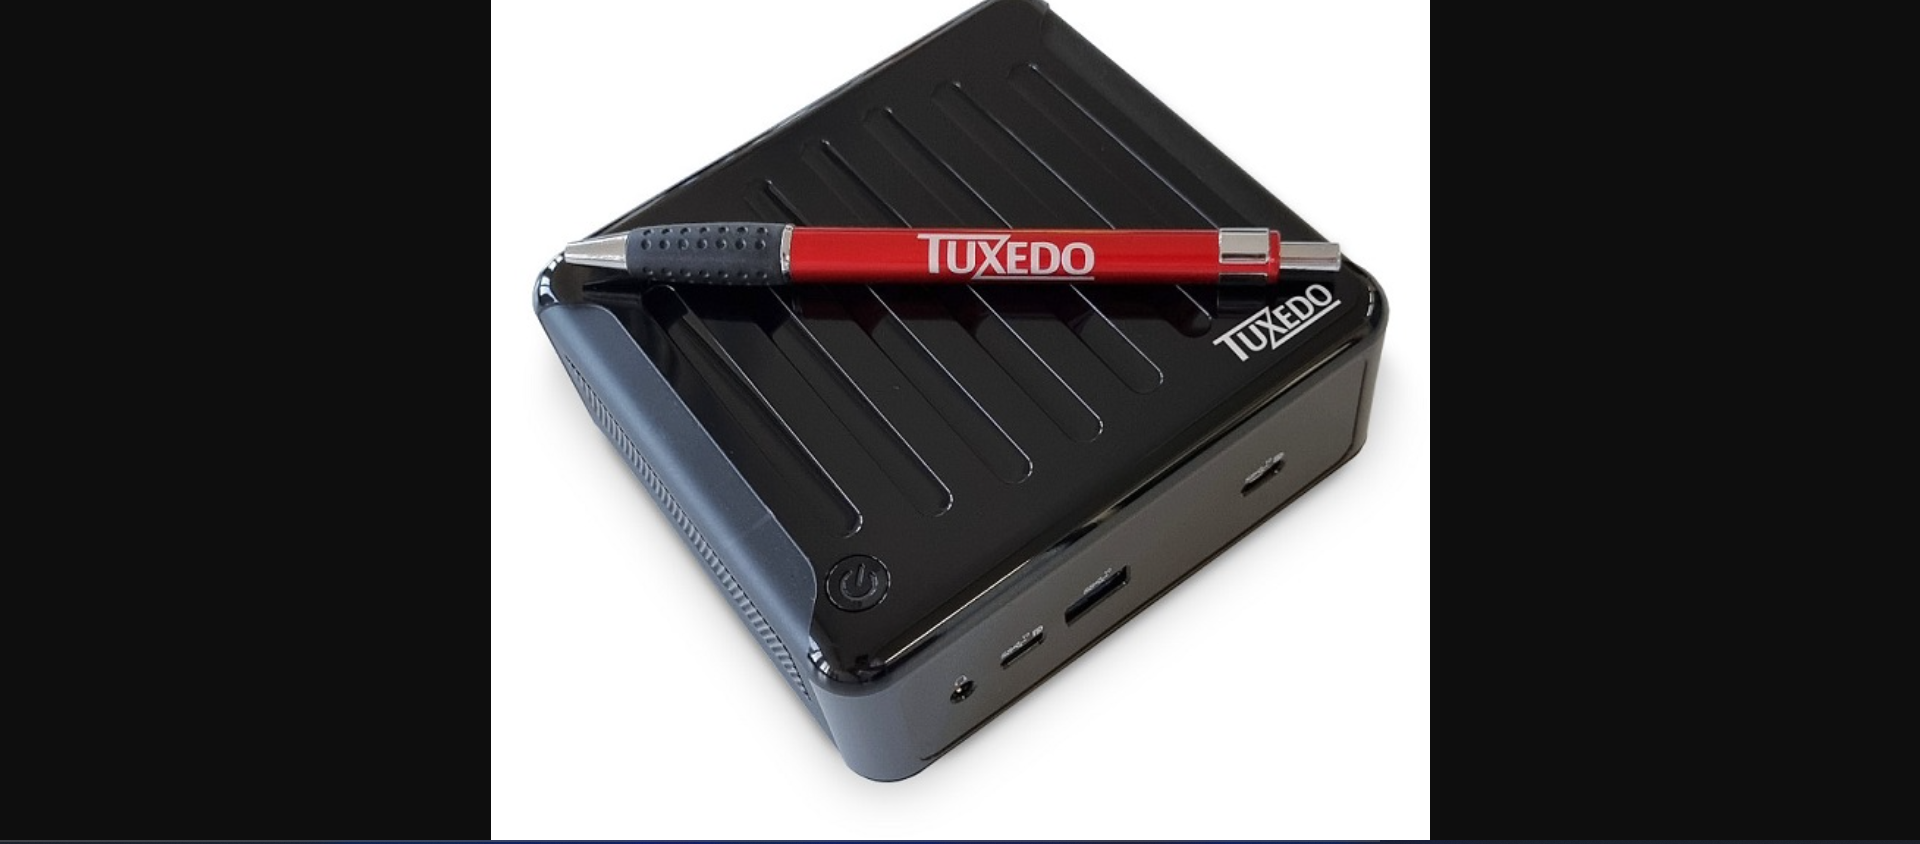 TUXEDO Nano Pro Linux pode ser atualizado e equipado com AMD Ryzen